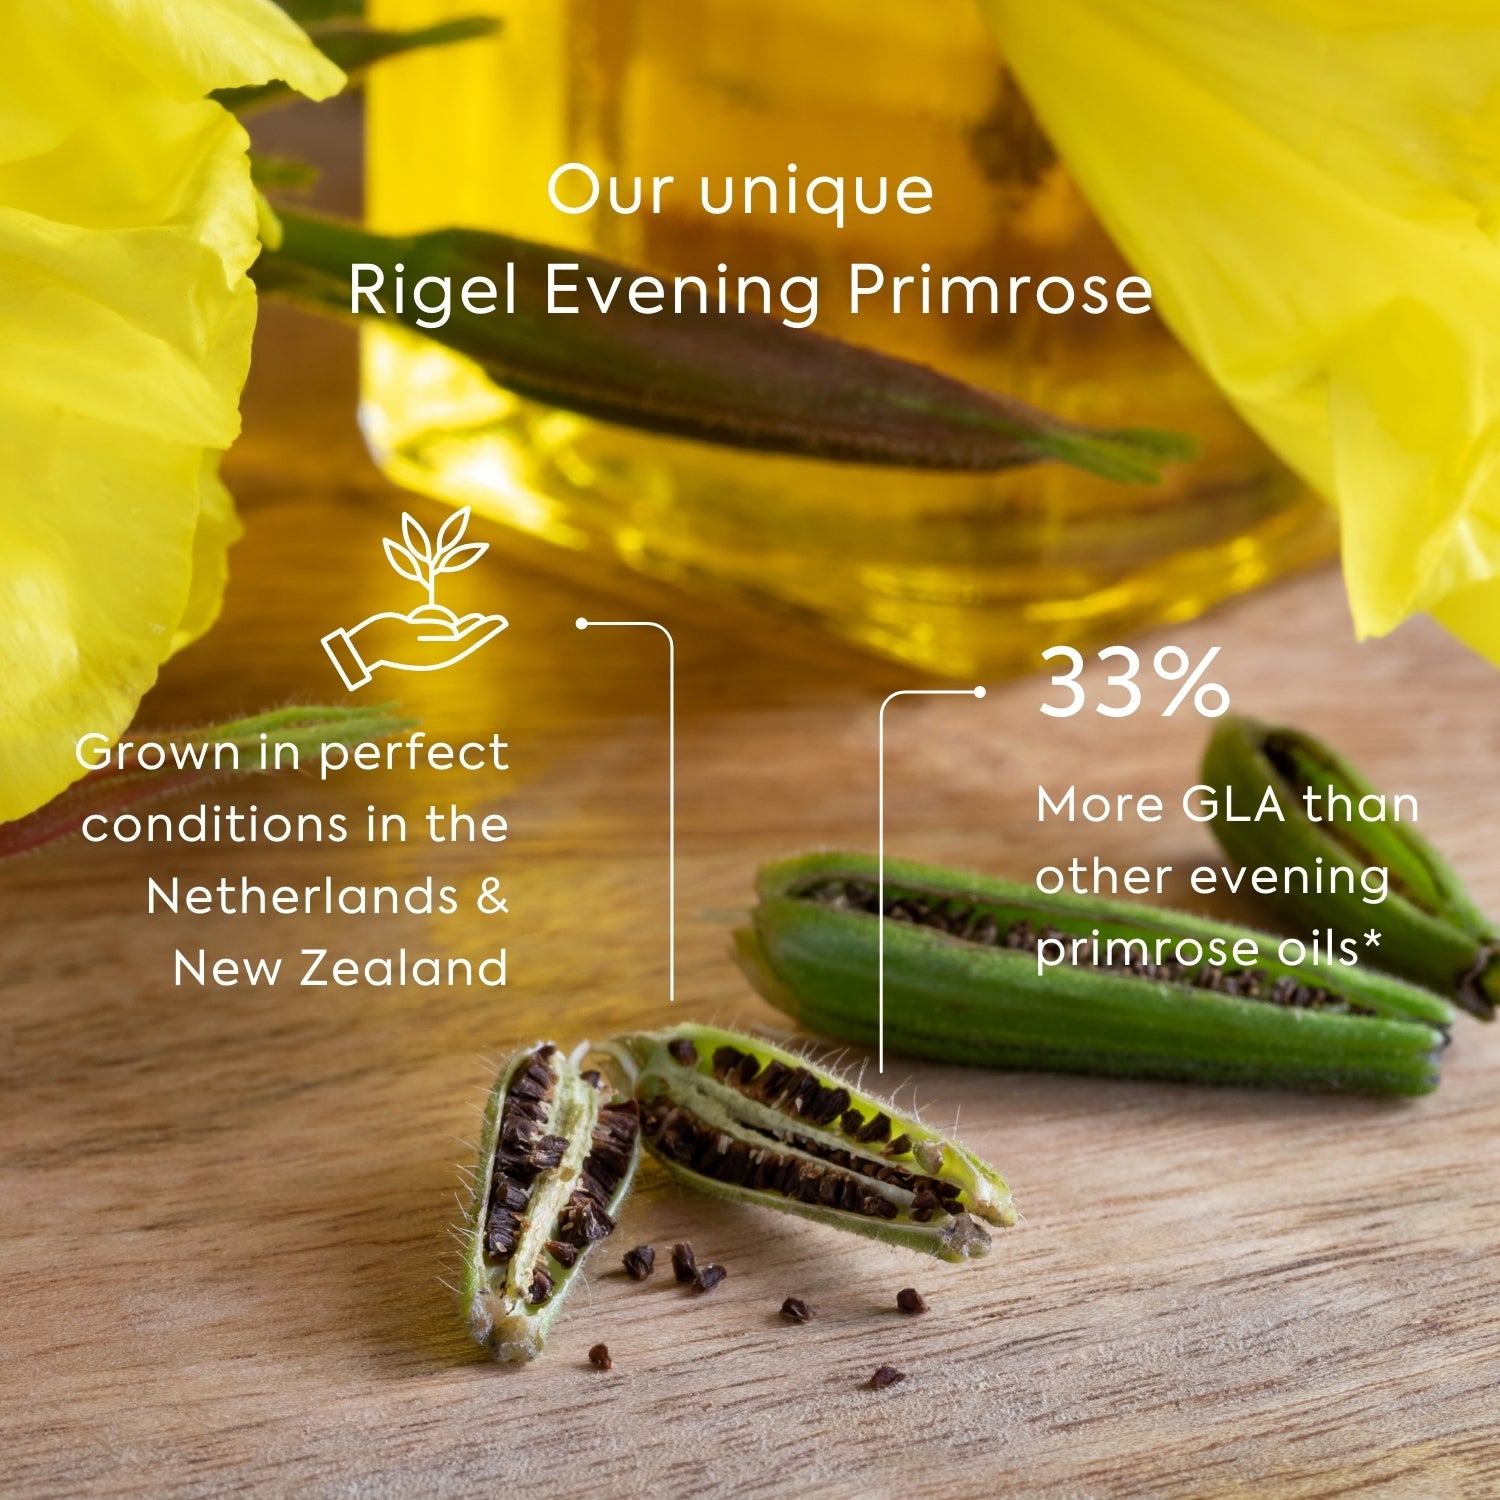 Efamol Evening Primrose Oil - unique Rigel Evening Primrose